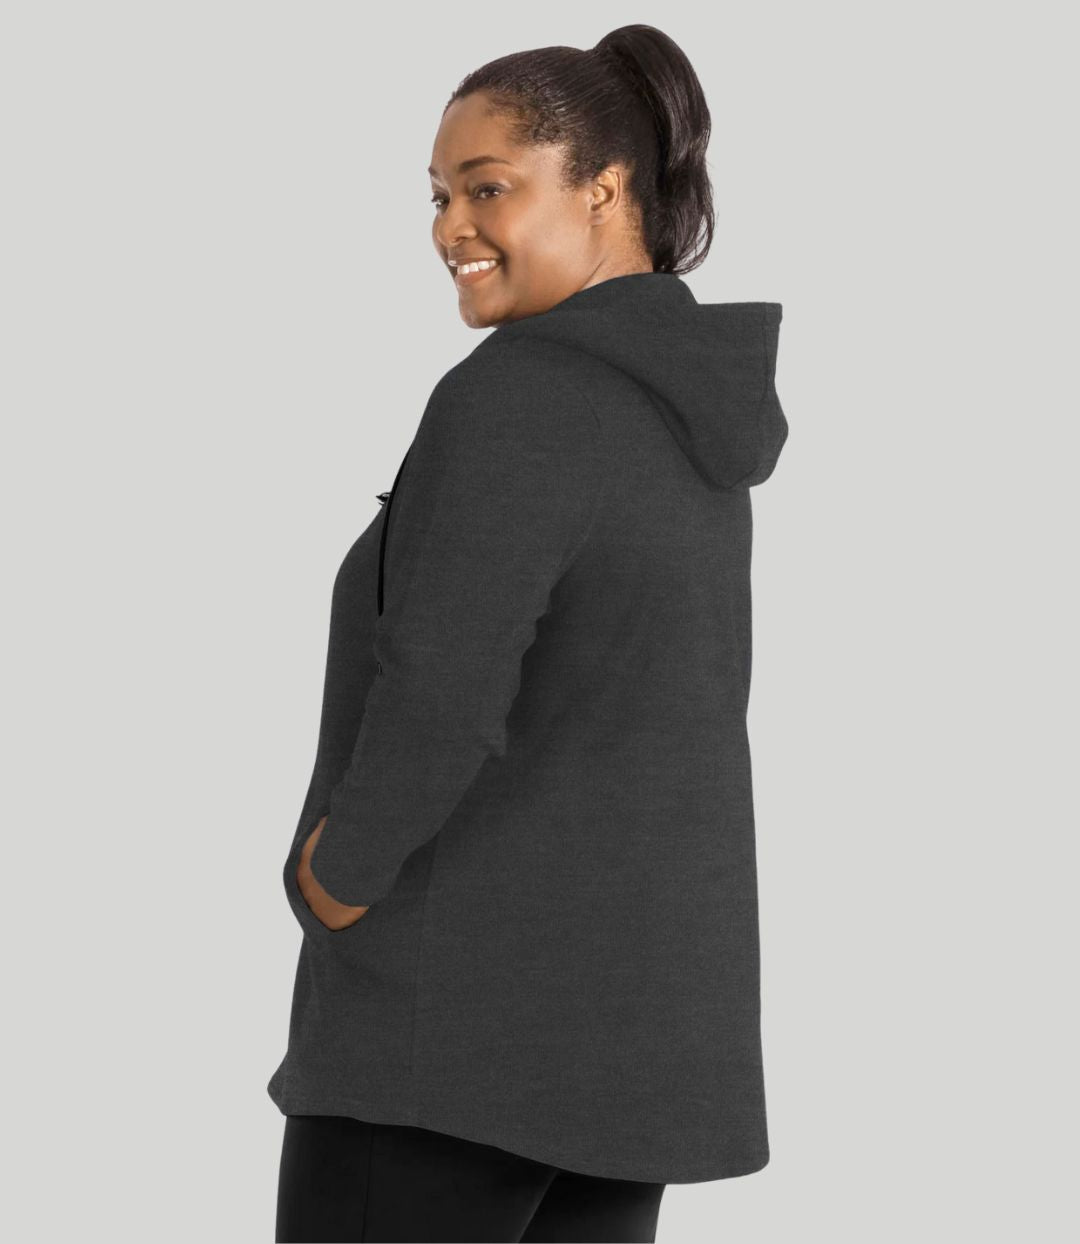 Model facing back, wearing JunoActive's MaVie Zip Front Hoodie in deep heather grey. Hands in pockets of hoodie.